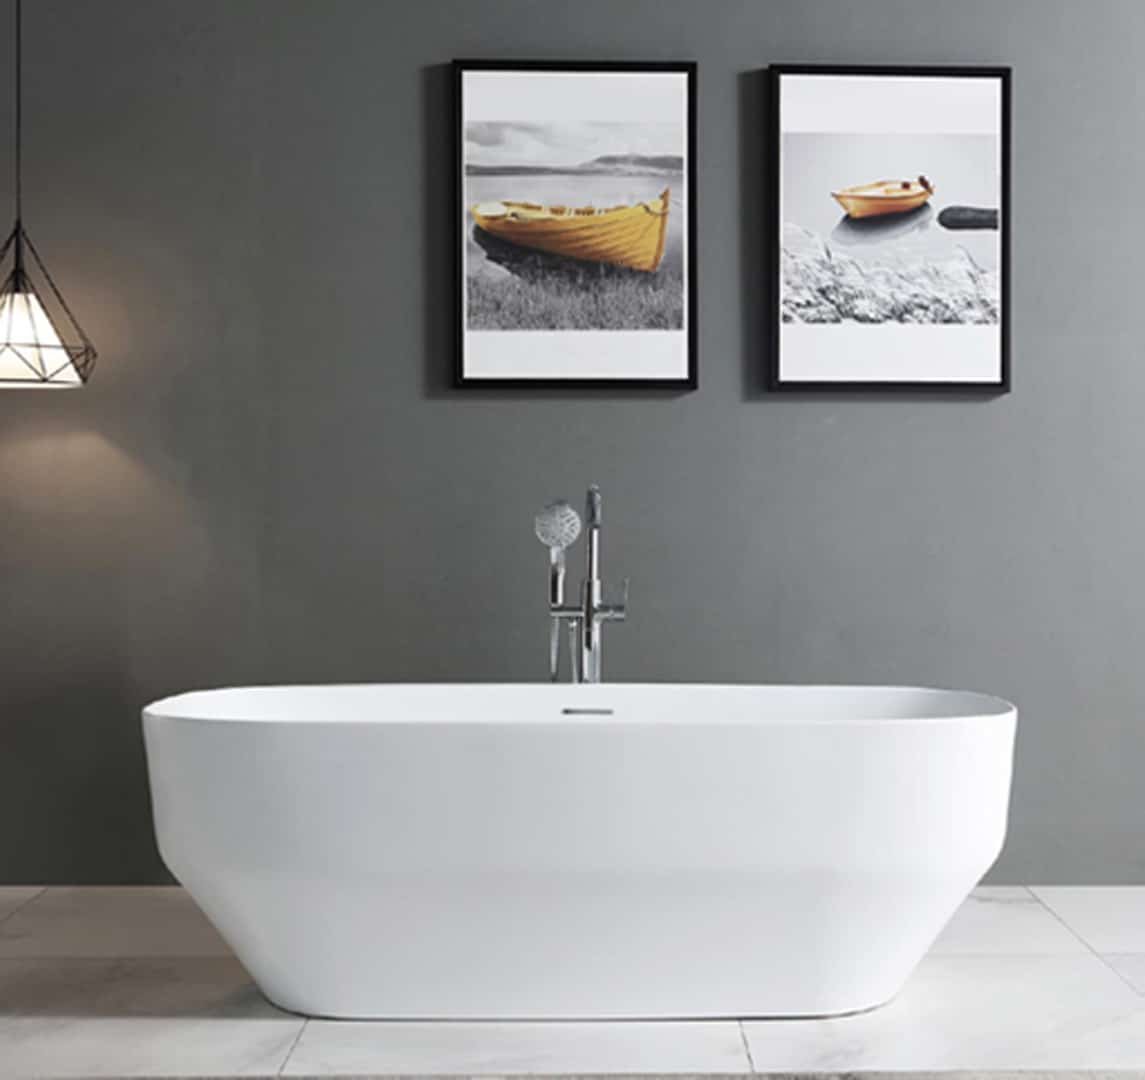 Salle de bain épurée avec une baignoire blanche autonome, un robinet sur pied, et deux cadres noirs affichant des images de bateaux sur le mur gris. Une suspensio